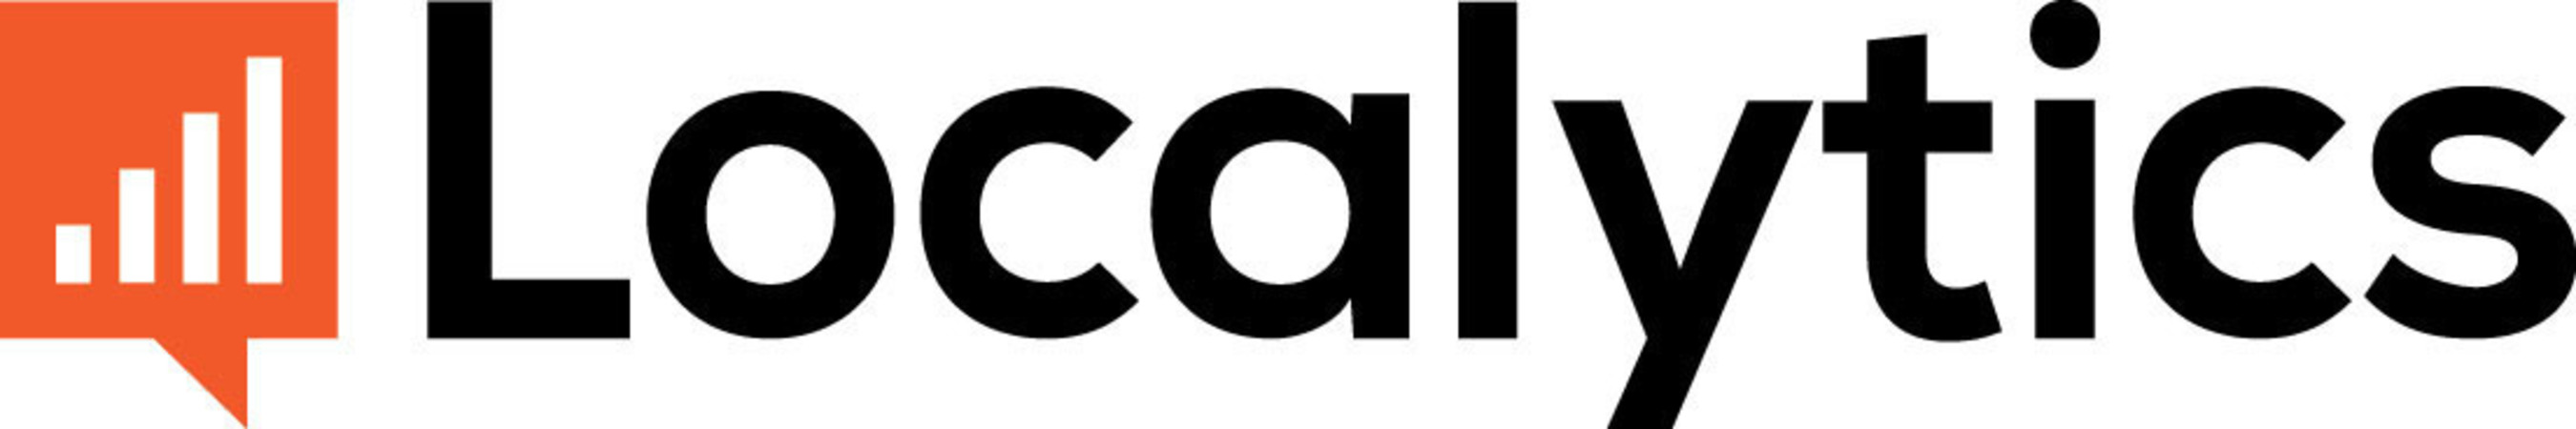 Localytics logo.